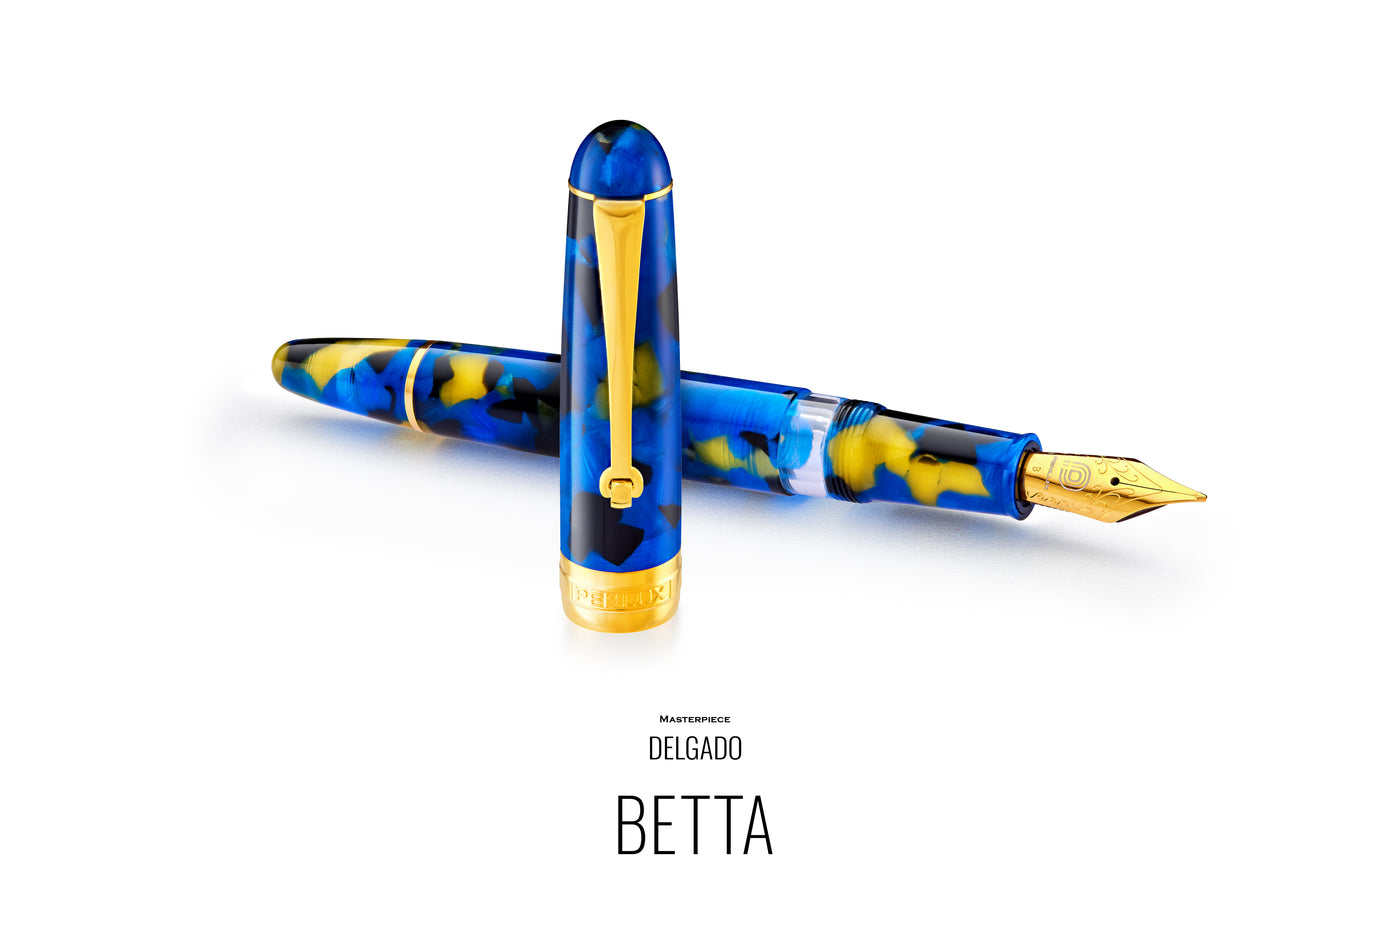 Penlux Masterpiece Delgado Fountain Ink Pen | Betta (Blue) Body | Piston Filling | No. 6 Jowo Nibs